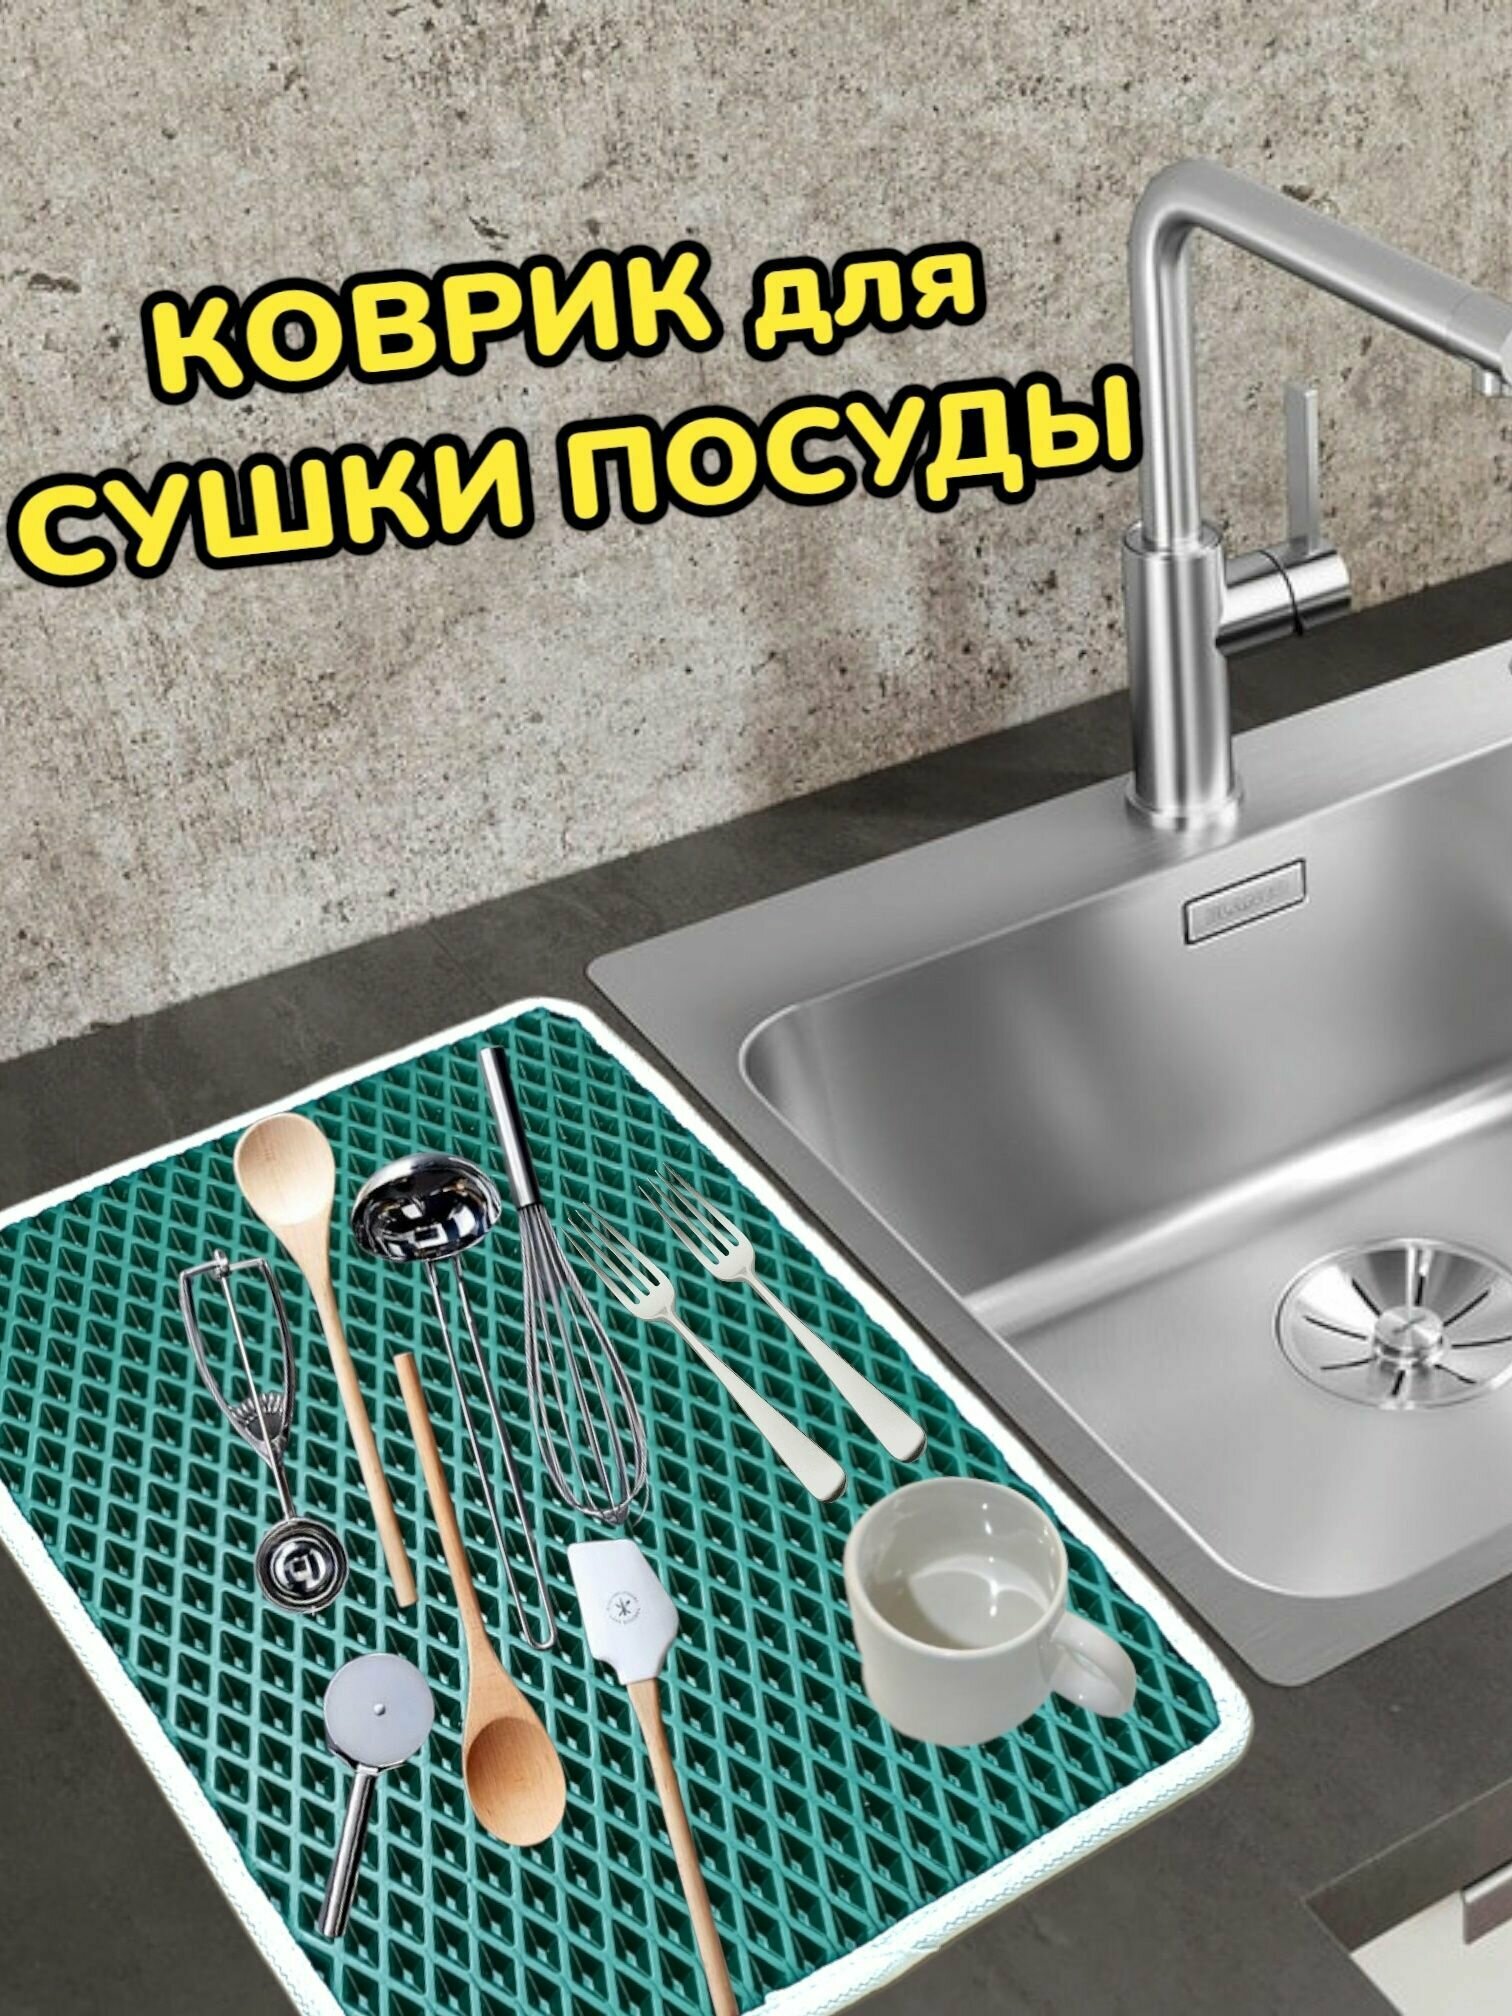 Коврик для сушки посуды / Поддон для сушилки посуды / 40 см х 30 см х 1 см / Зеленый с белым кантом